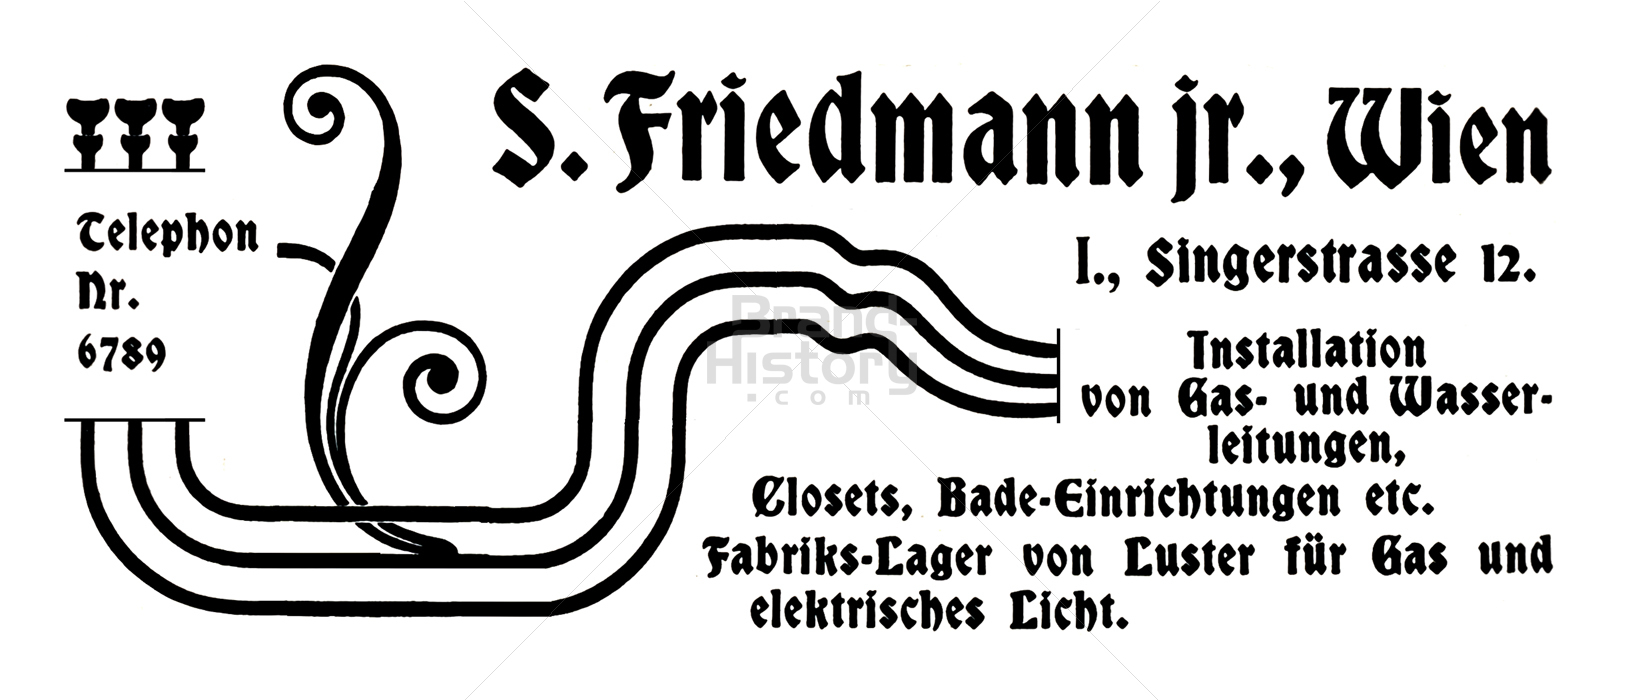 S. Friedmann, Wien